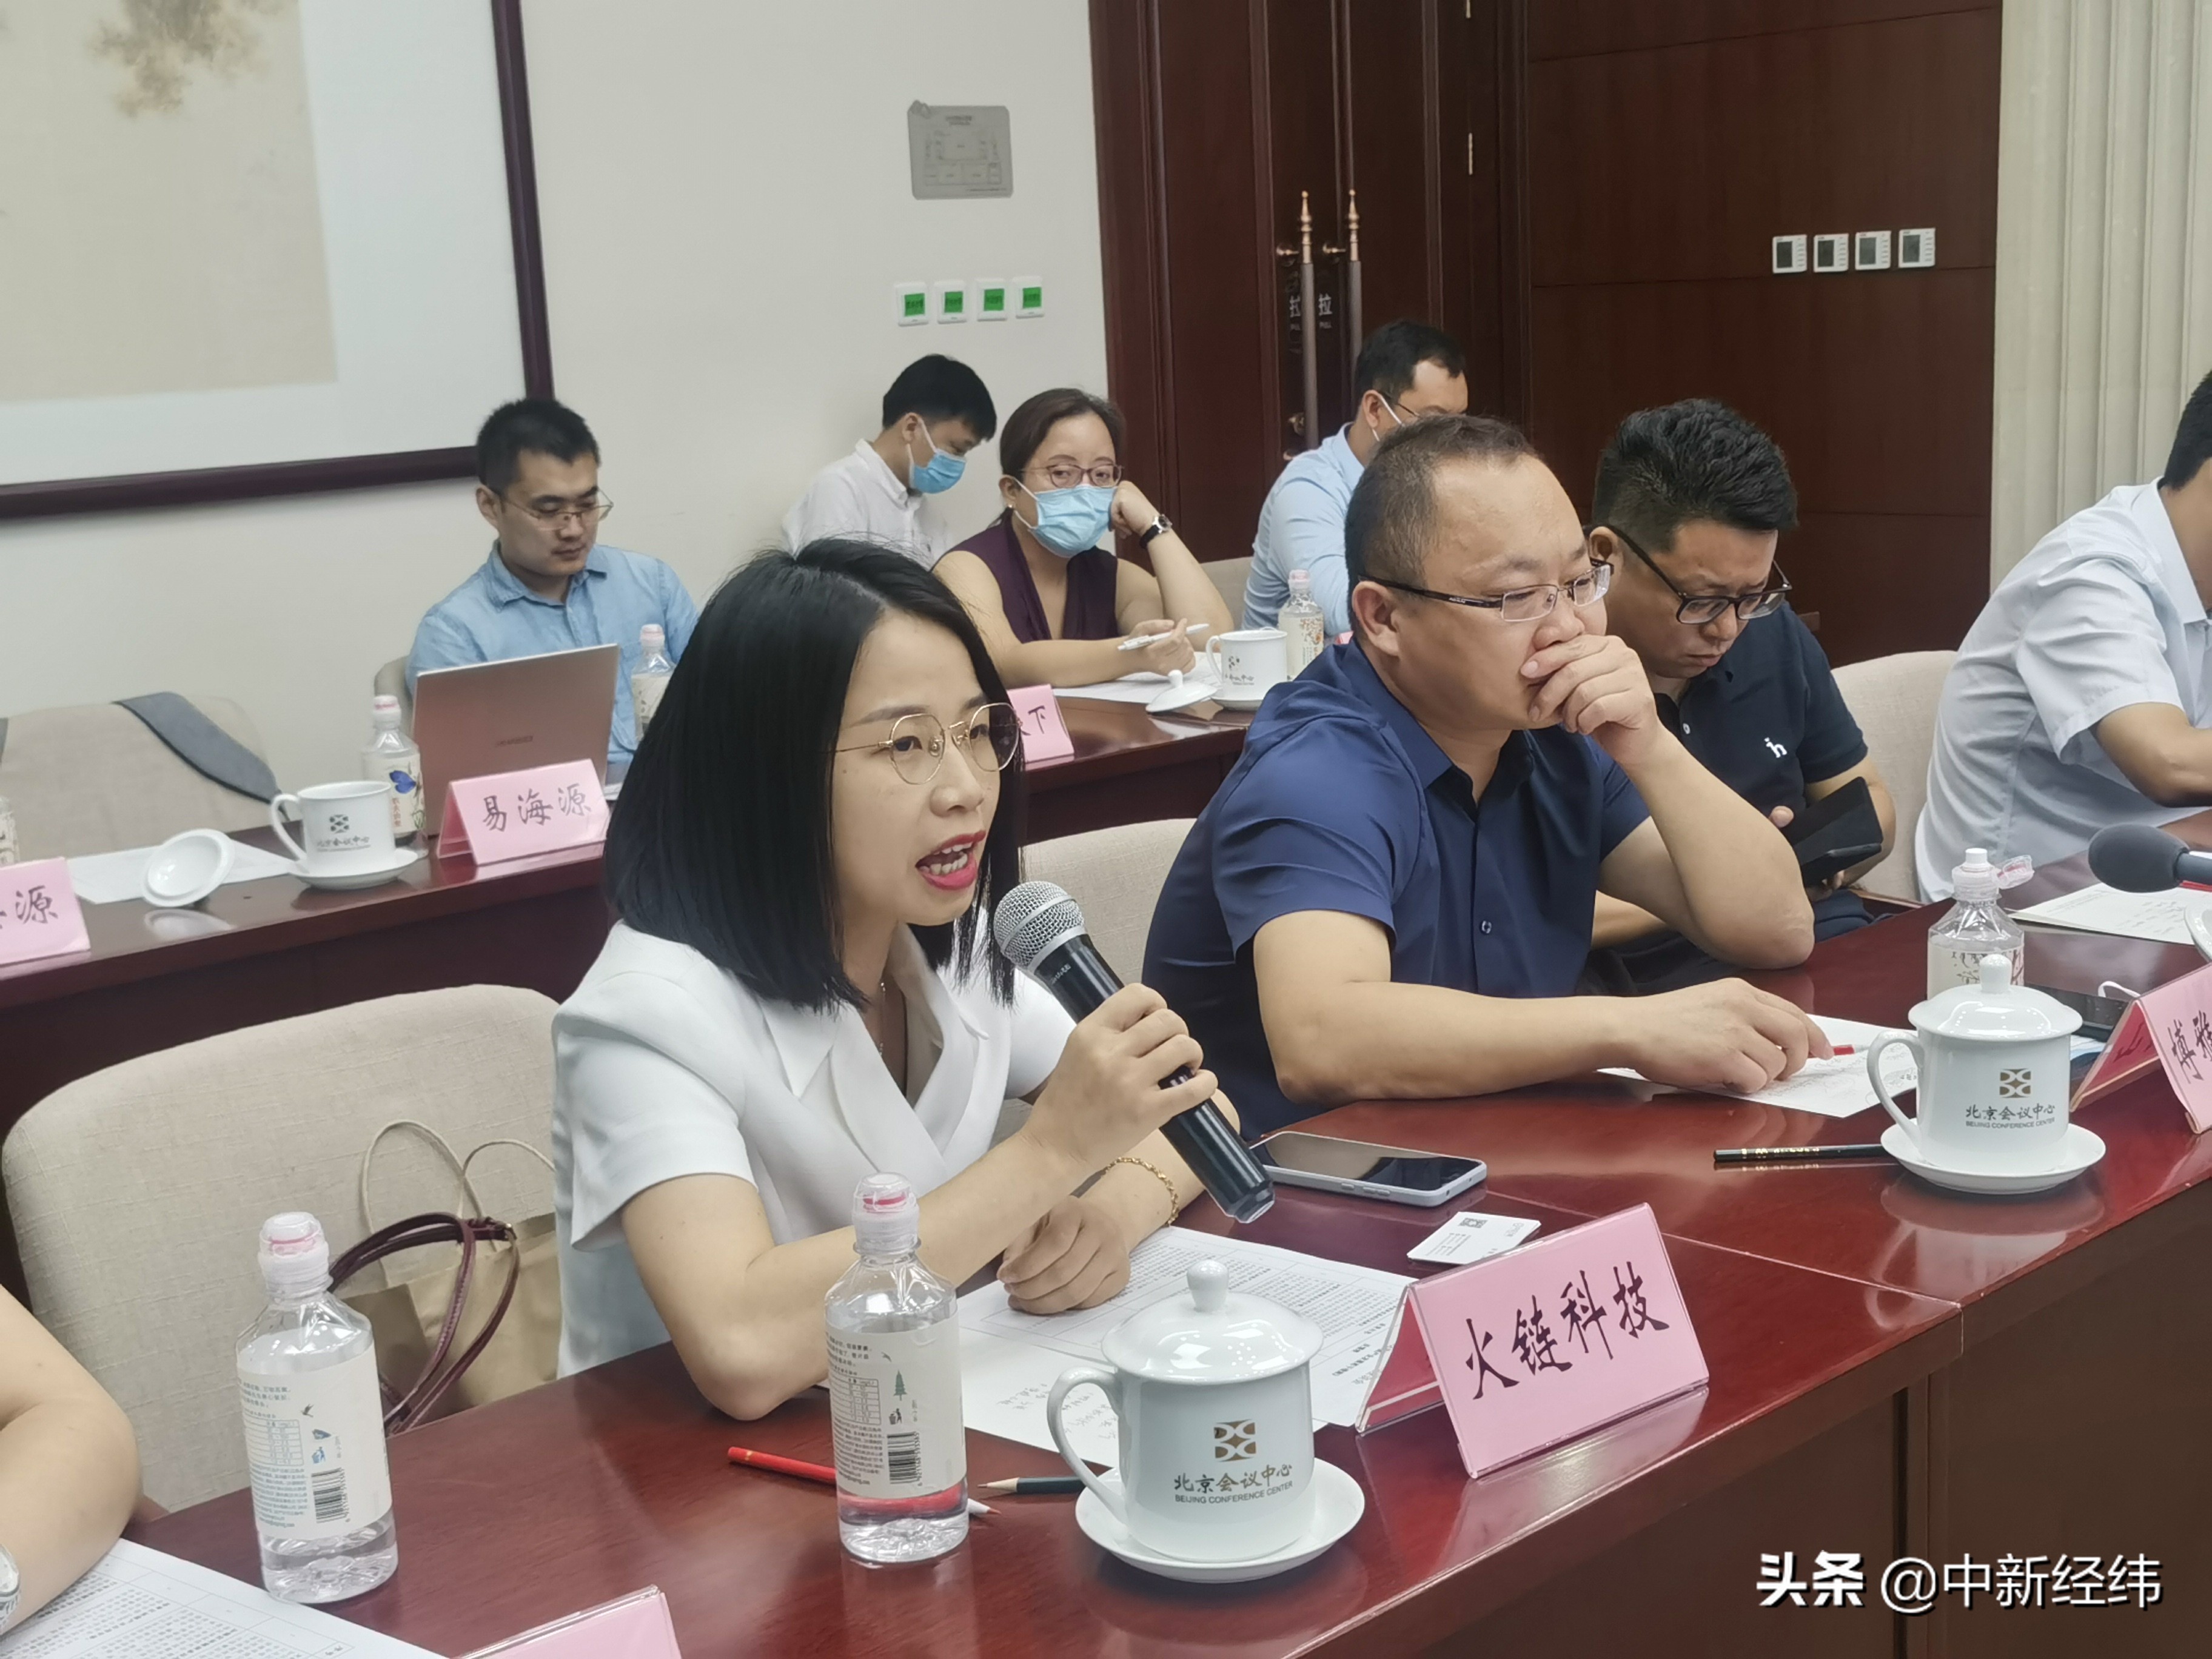 火链科技出席云南区块链座谈会 与中国电子等一同建言献策